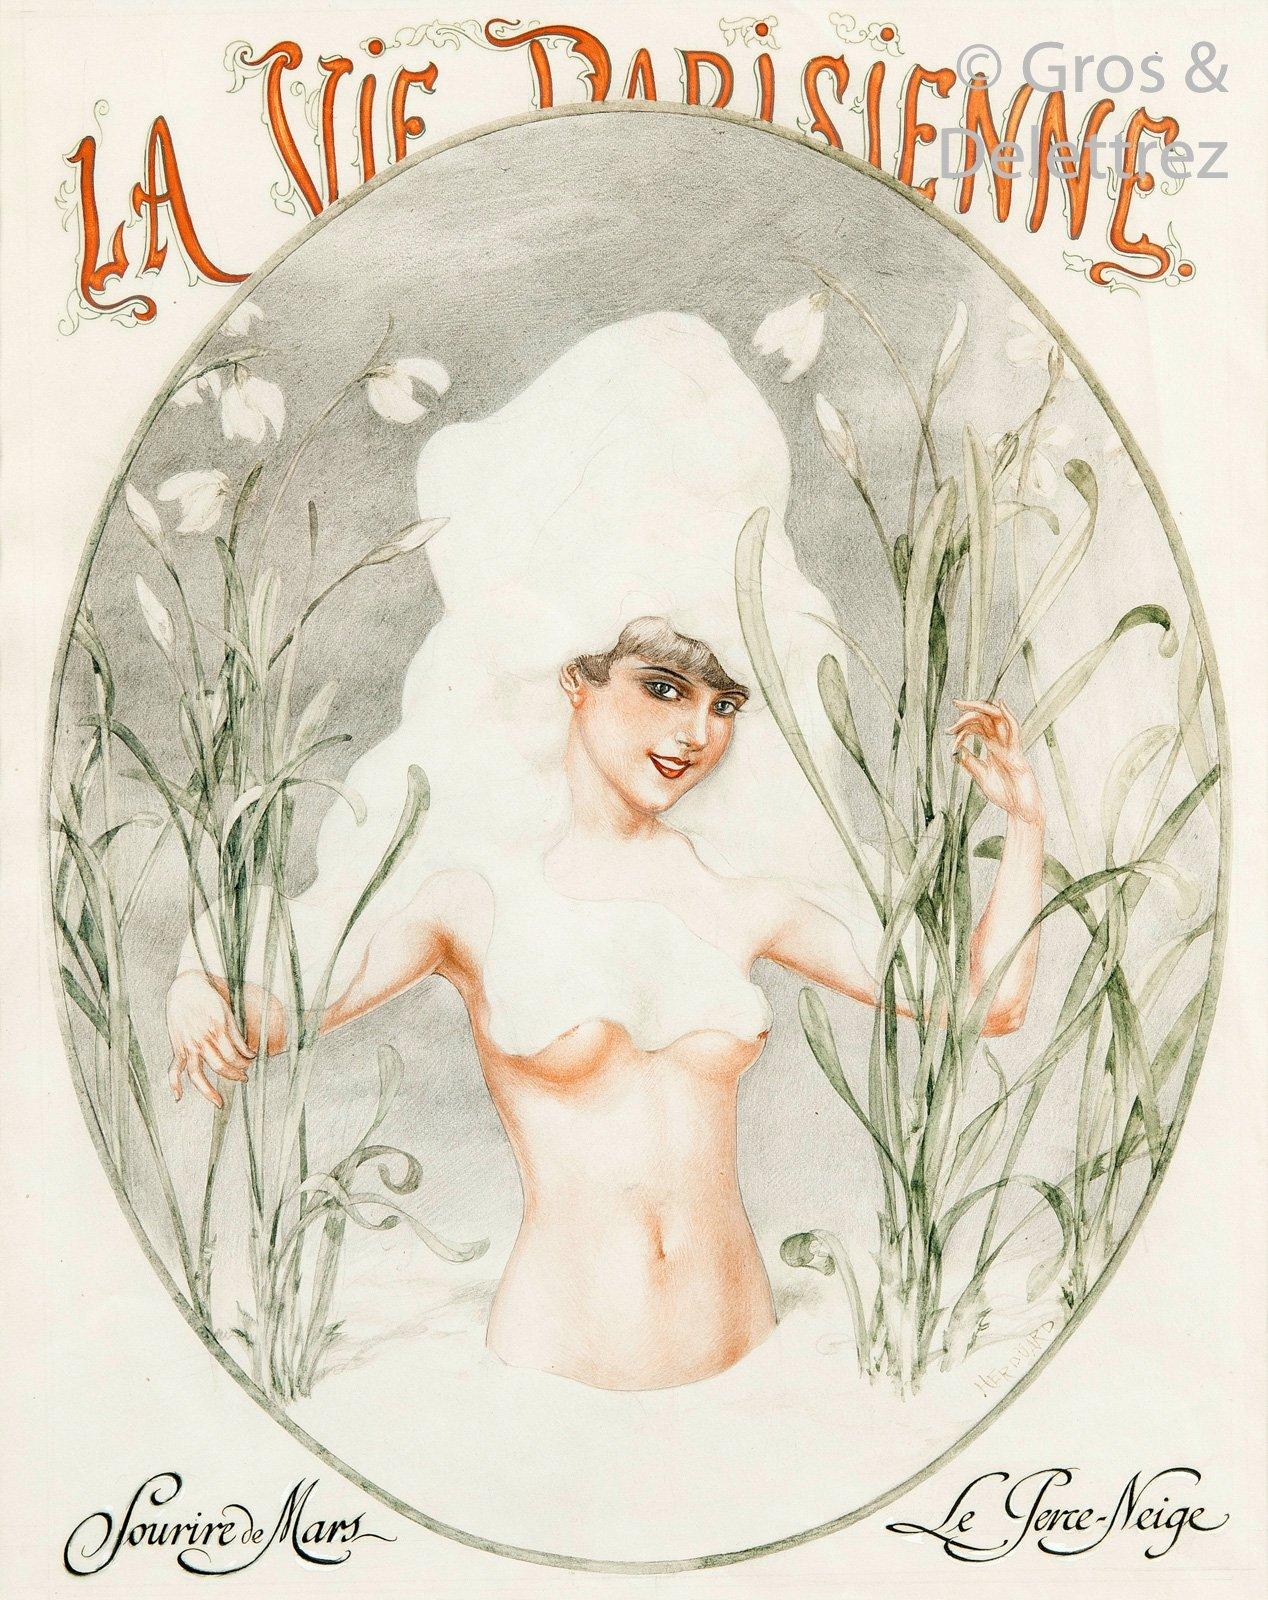 Sourire de Mars - Le perce-neige (Projet pour La Vie parisienne du 17 mars 1928) by Chéri Hérouard, 1928